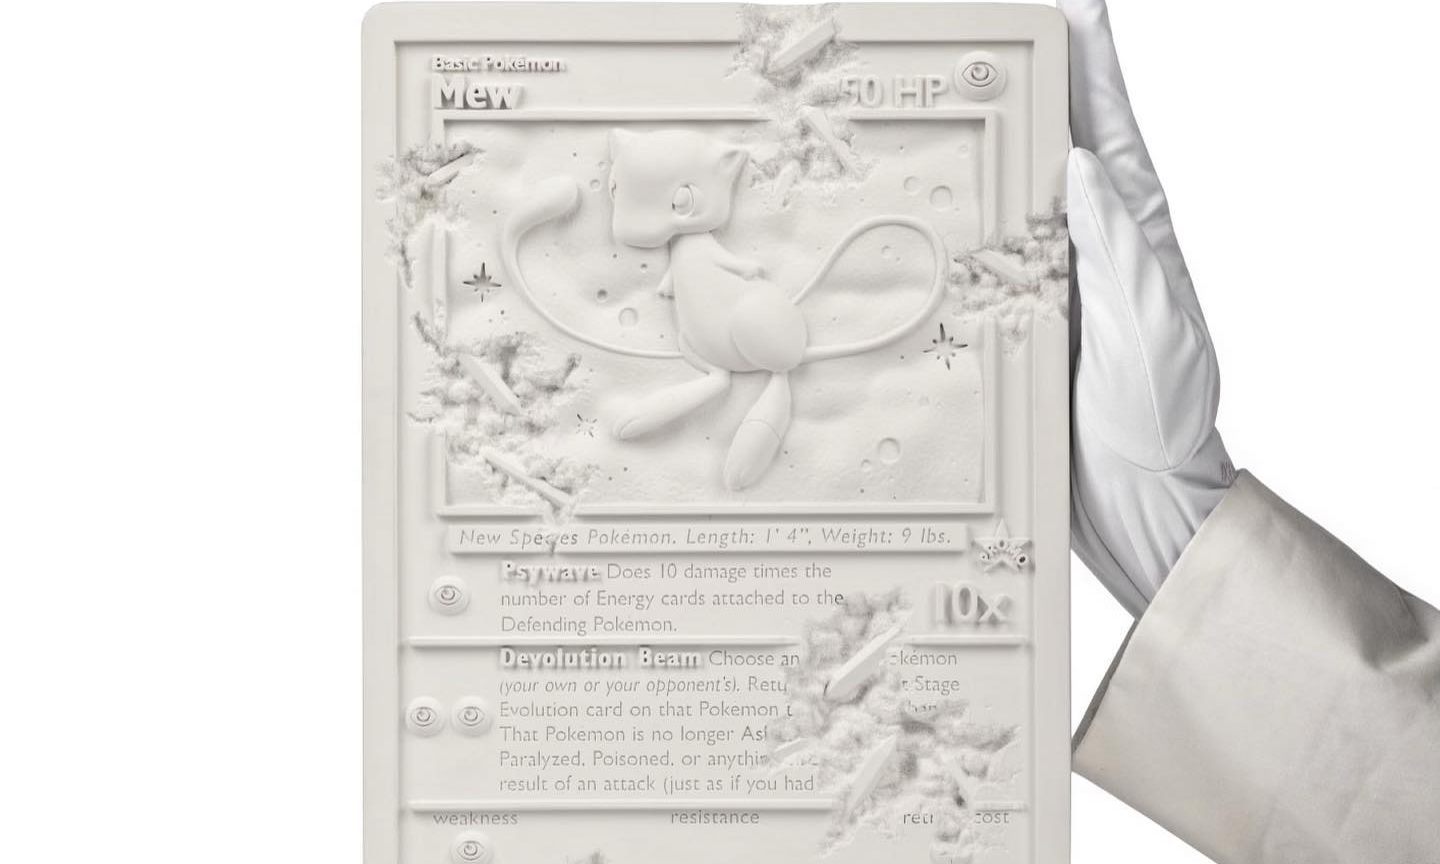 Daniel Arsham x Pokémon 白水晶梦幻卡雕塑公布细节照